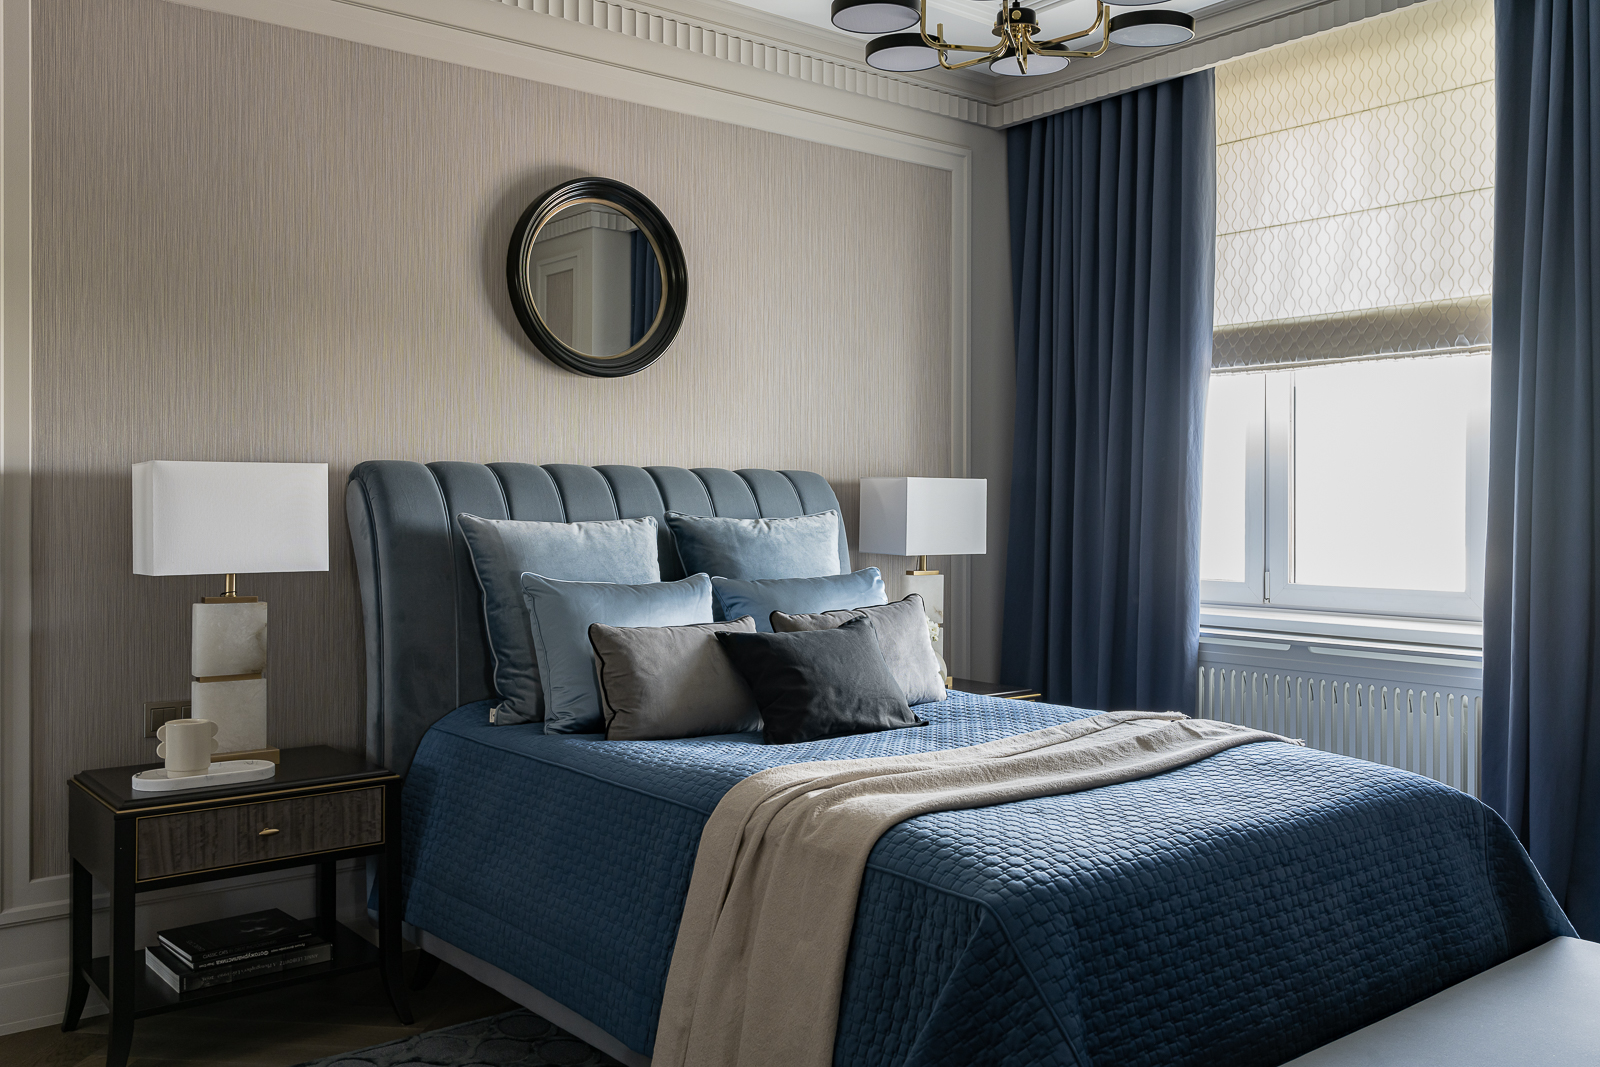 Phòng ngủ thứ nhất được thiết kế theo phong cách cổ điển với màu xanh lam kết hợp màu ghi của giấy dán tường. Táp đầu giường và đèn ngủ bố trí đối xứng cho căn phòng vẻ đẹp sang trọng.